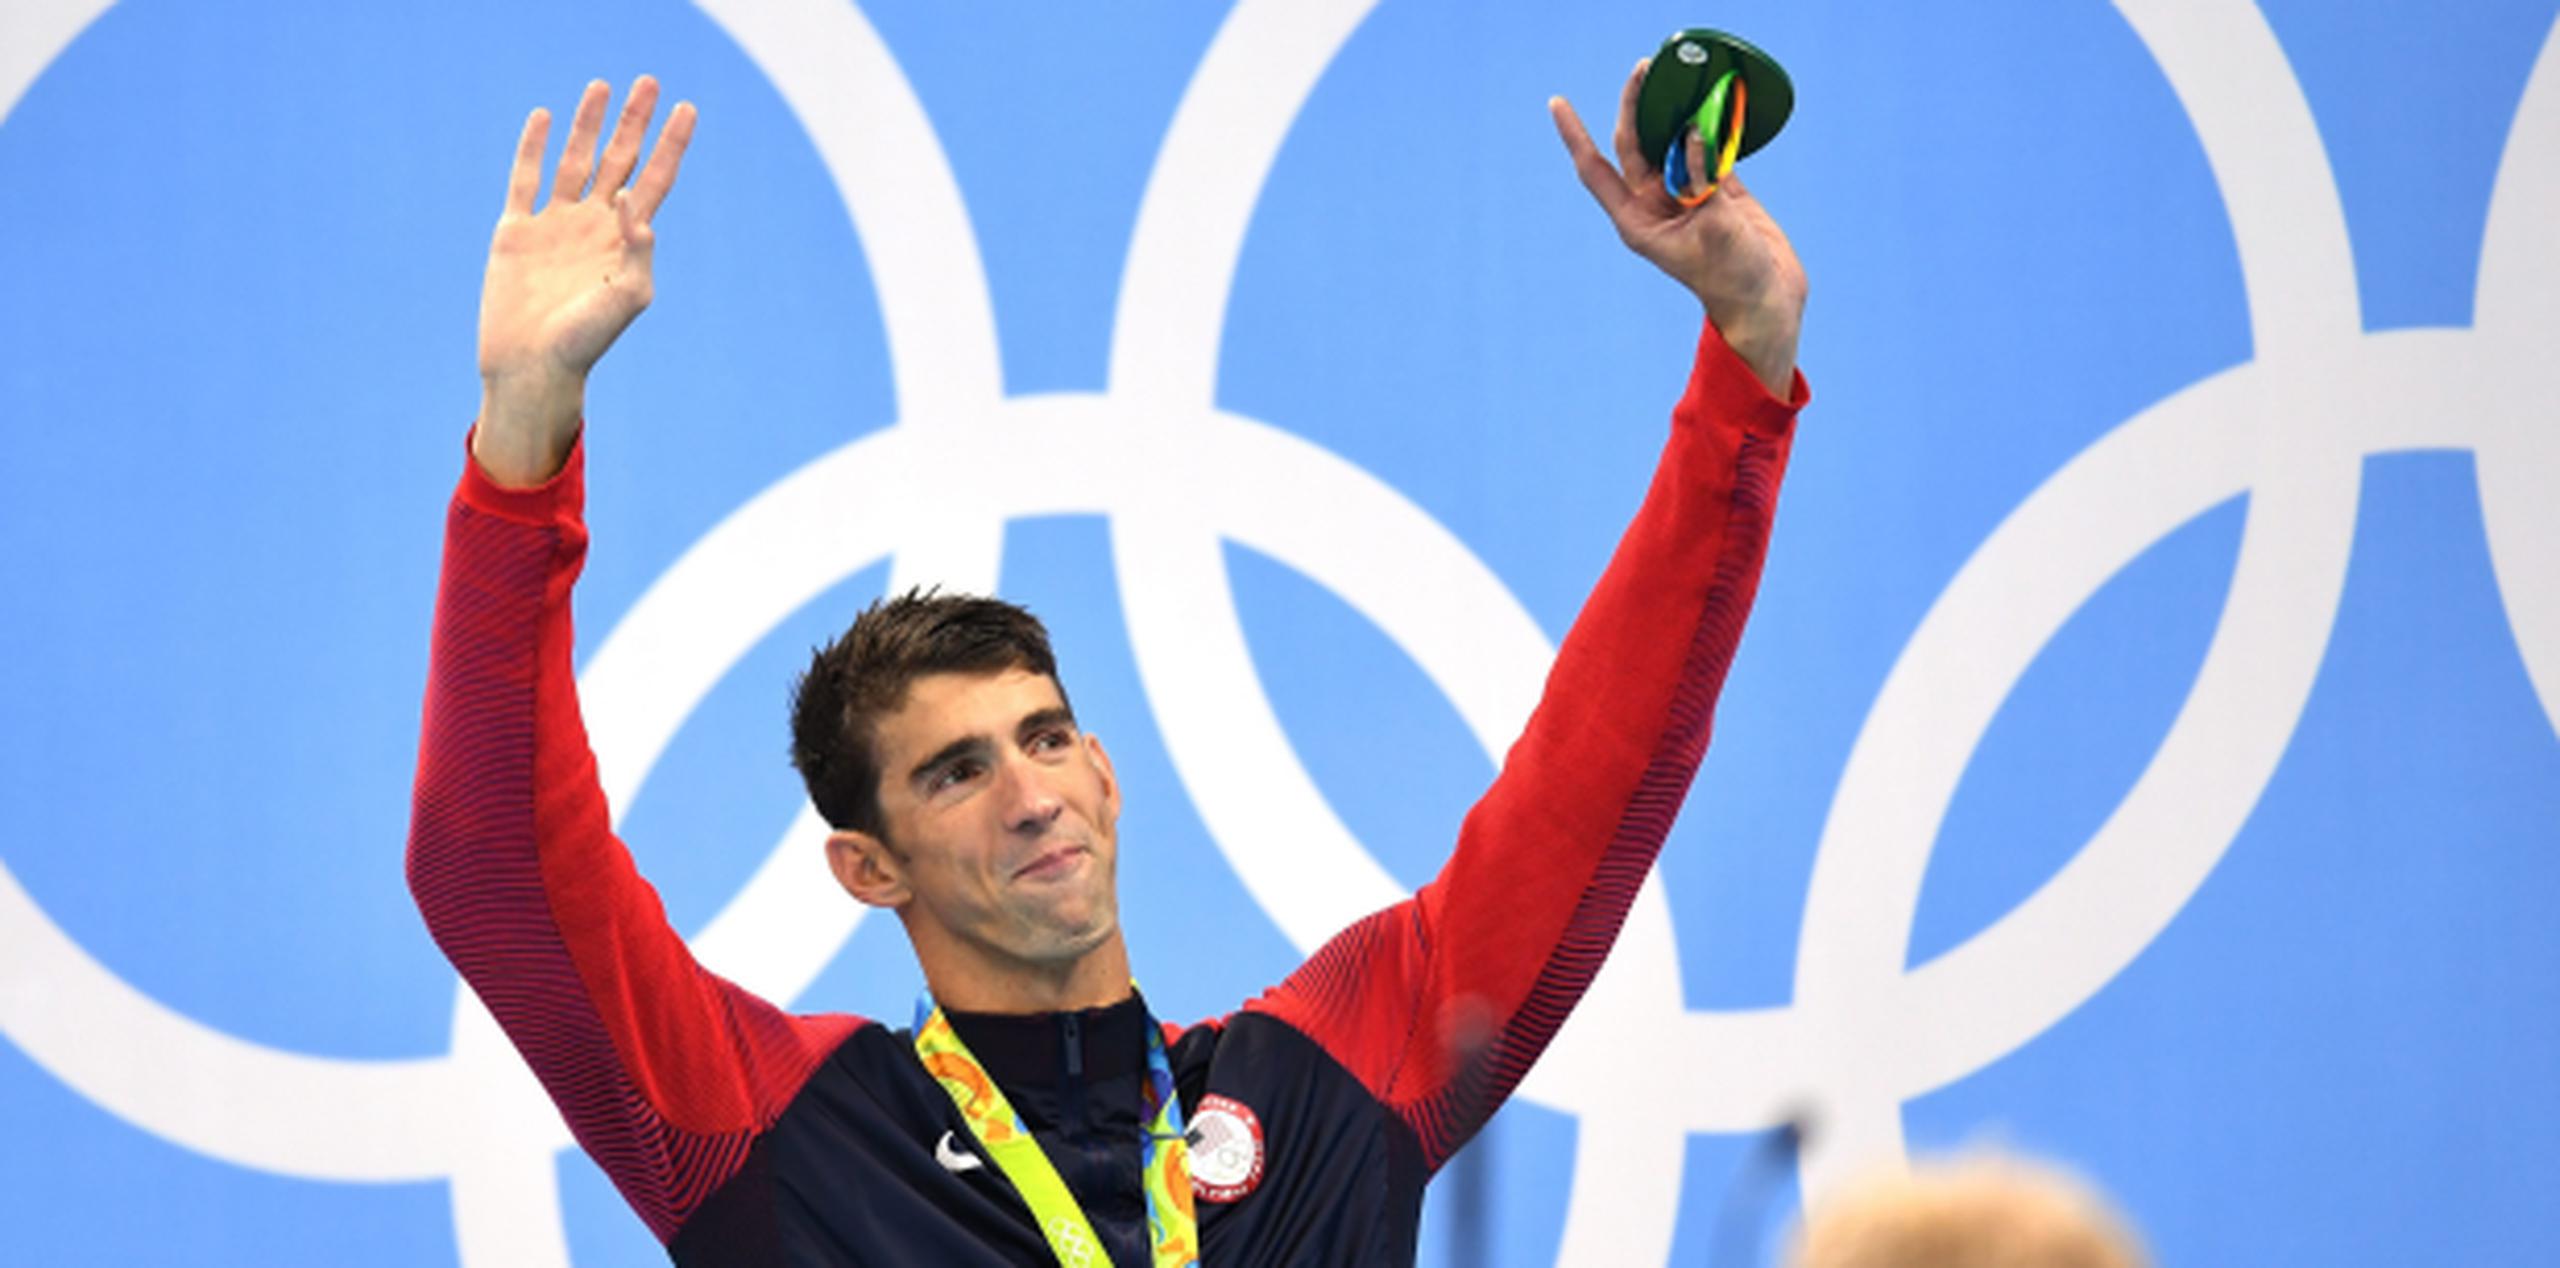 Michael Phelps consideró antes su retiro tras las Olimpiadas de 2012, pero regresó para ganar más medallas en Río 2016. (Archivo)